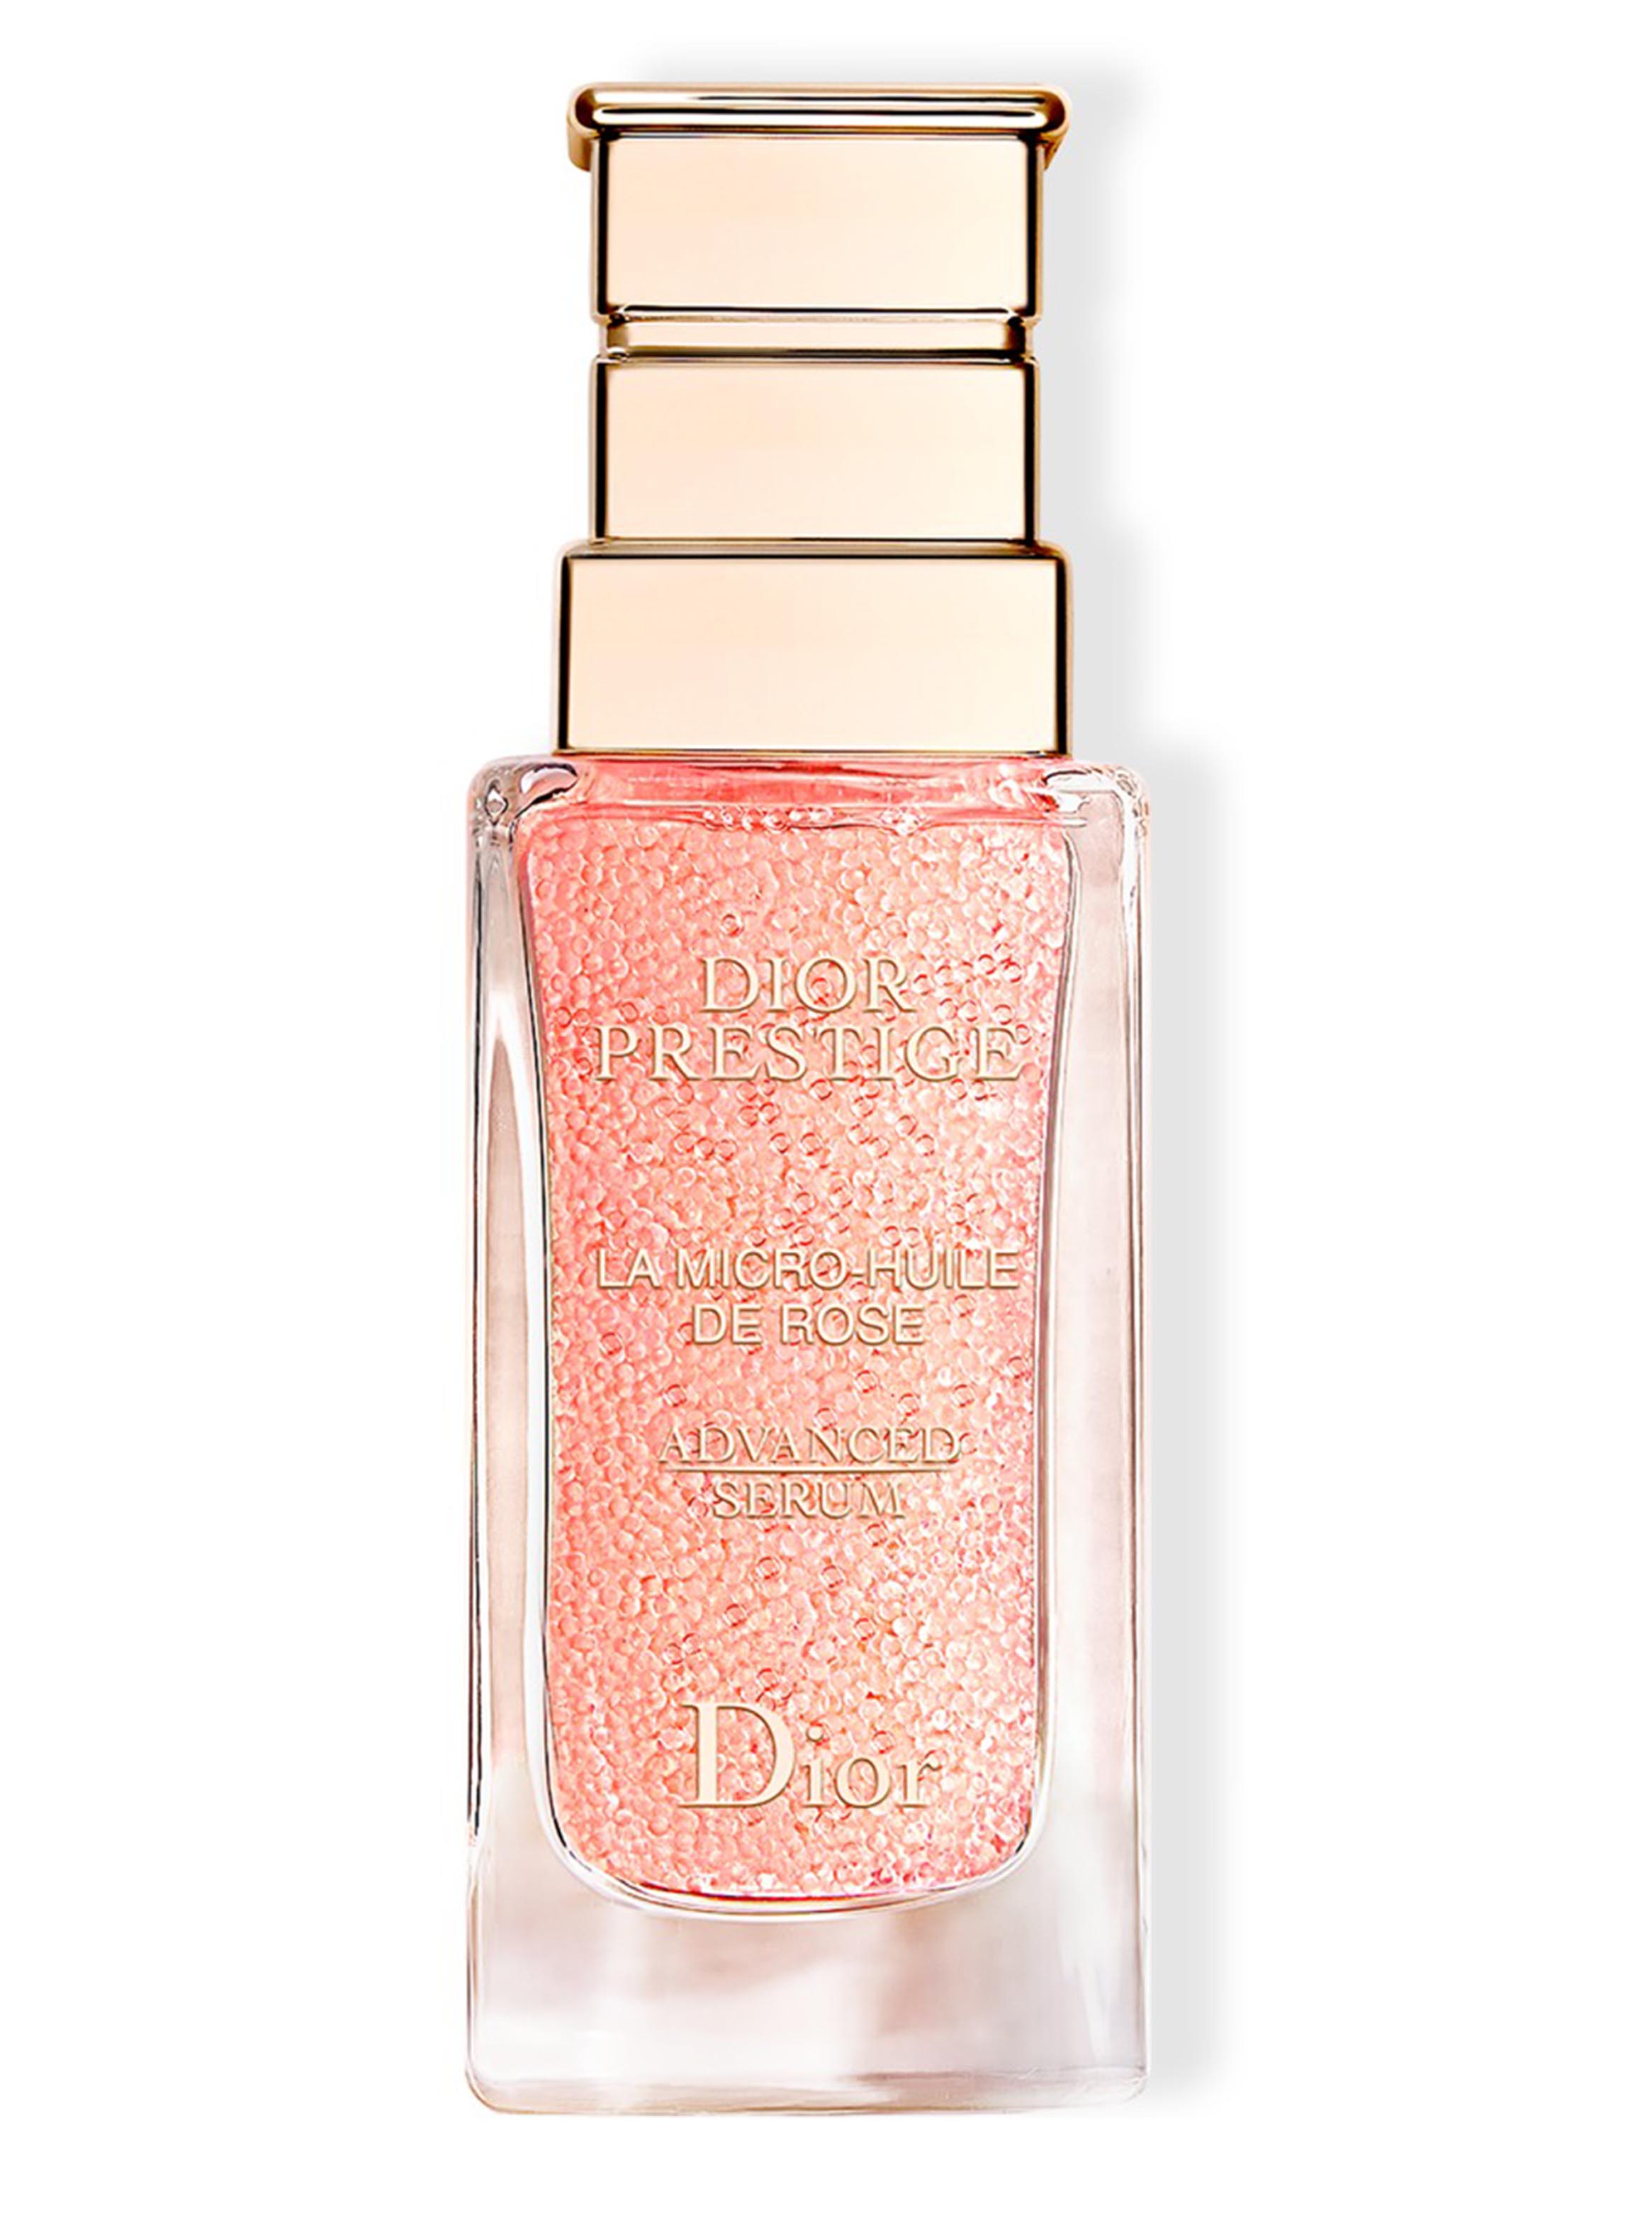 Dior Prestige La Micro-Huile de Rose Advanced Serum 30ml